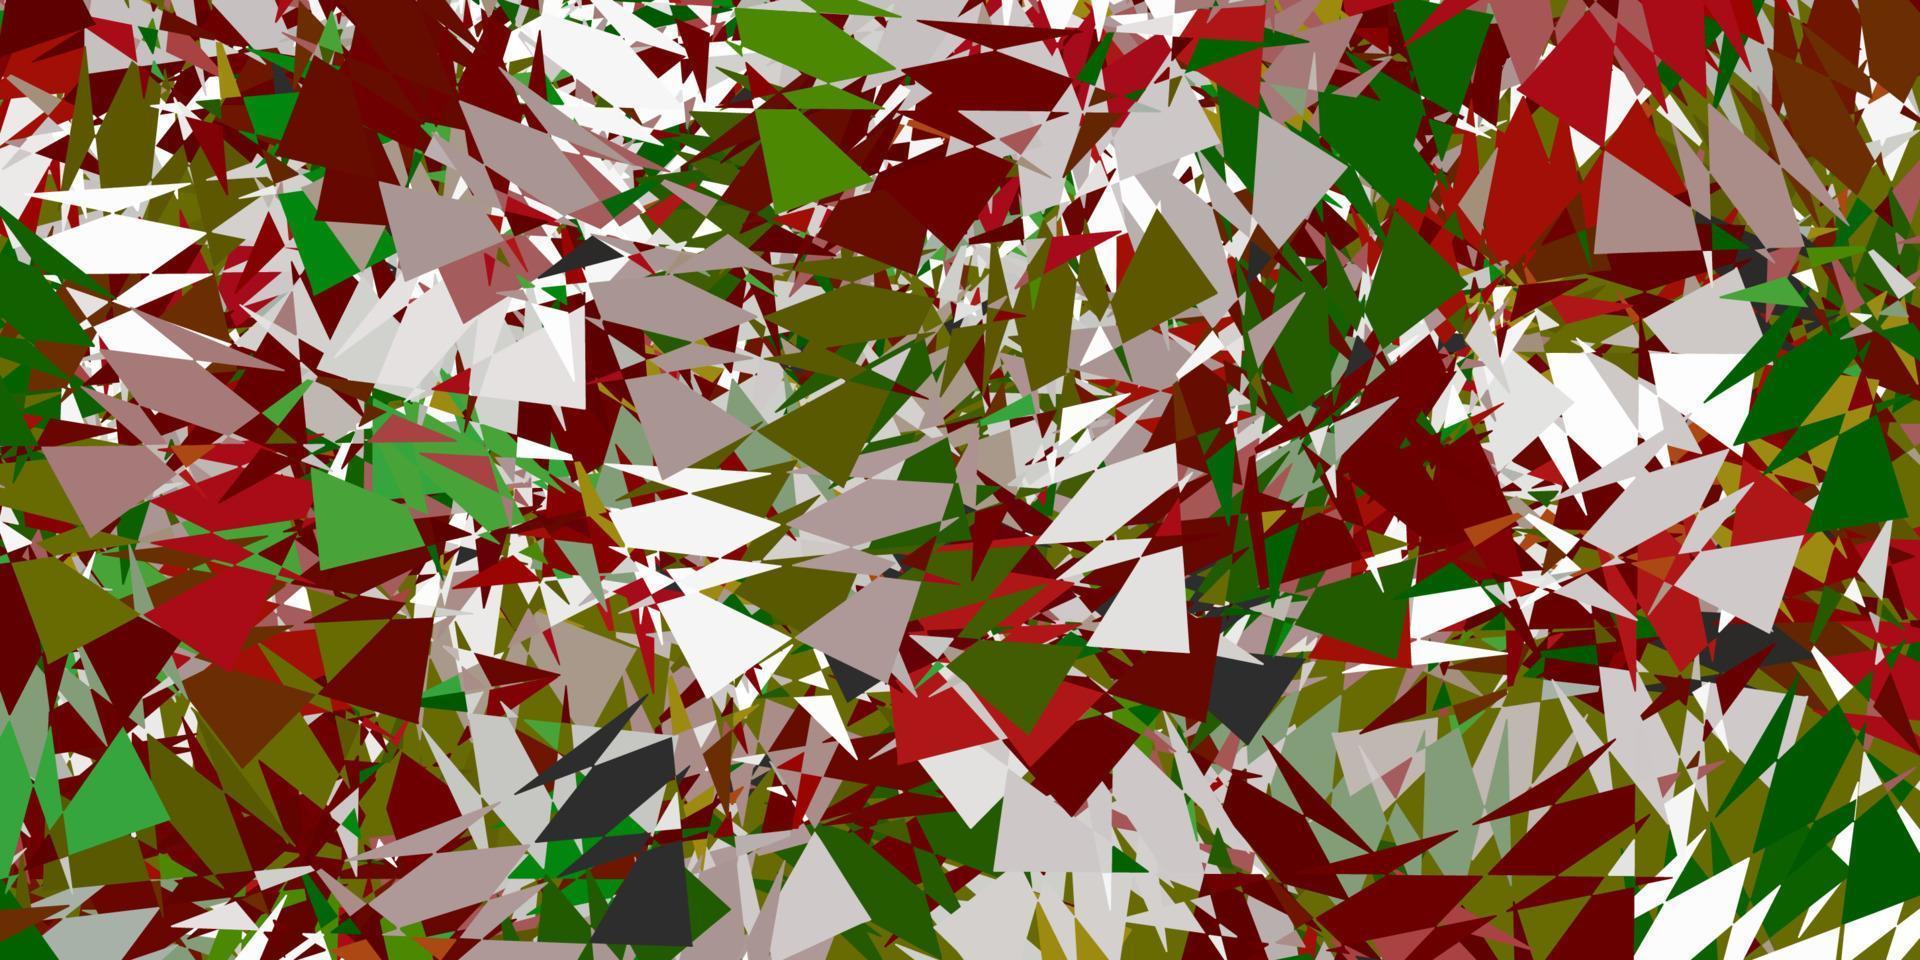 diseño de vector verde claro, rojo con formas triangulares.